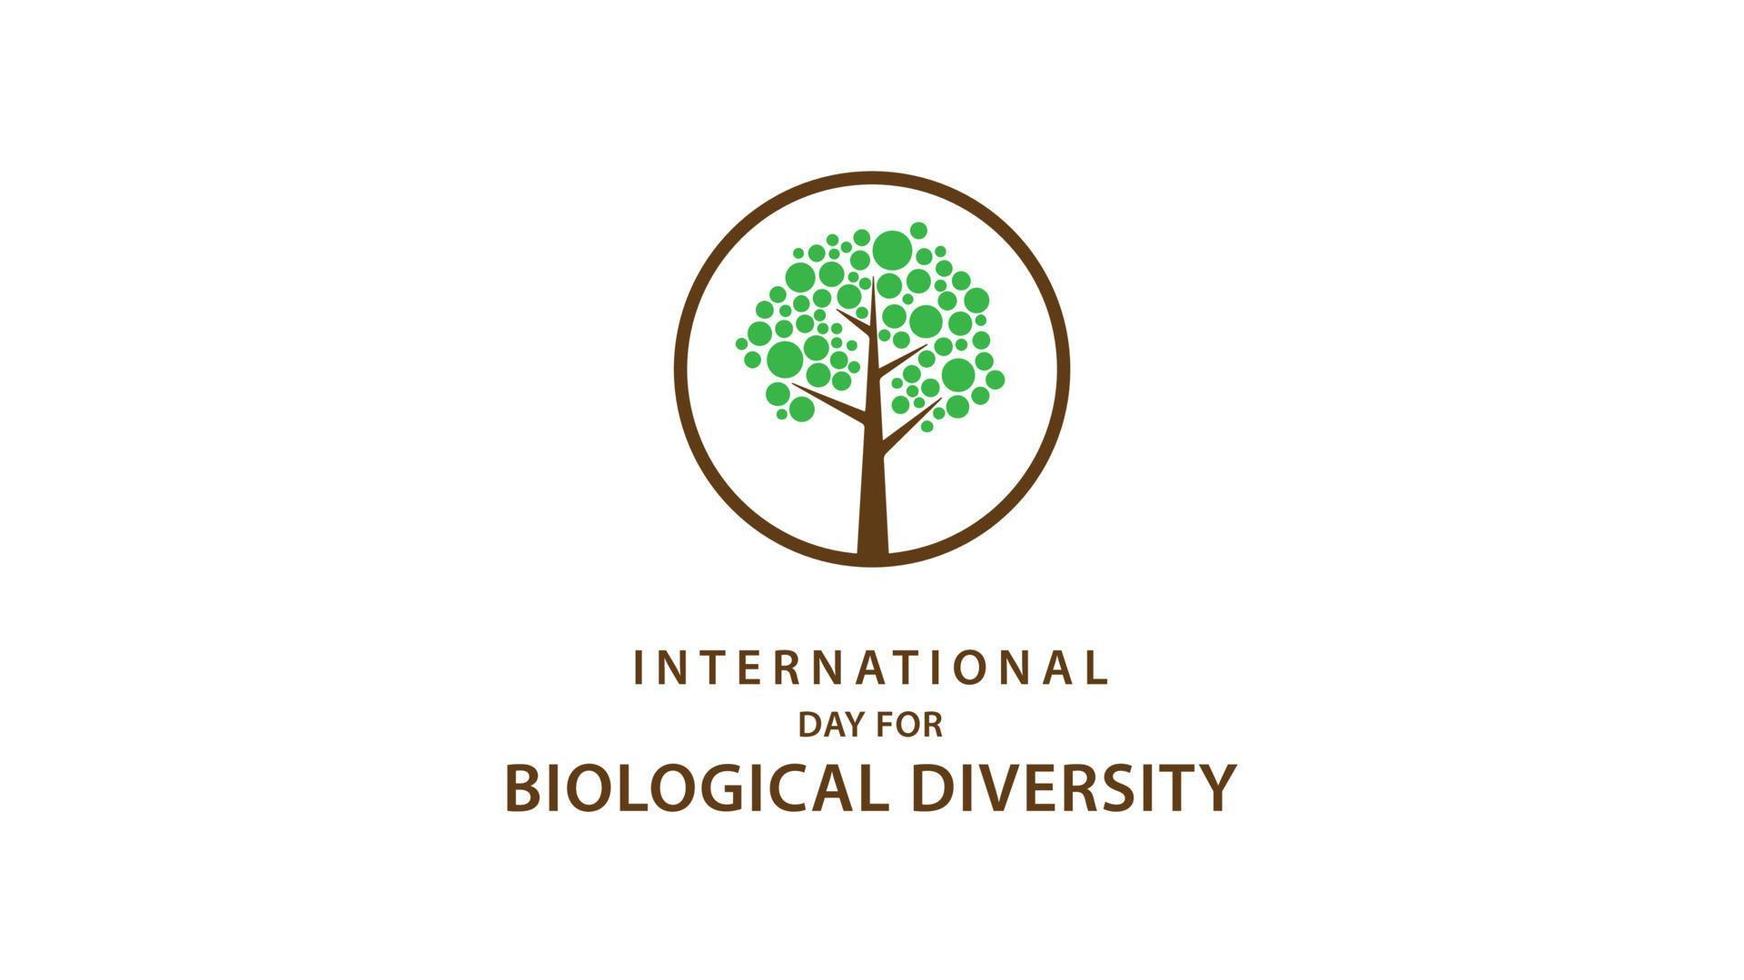 International Day for Biological Diversity. Vector illustration